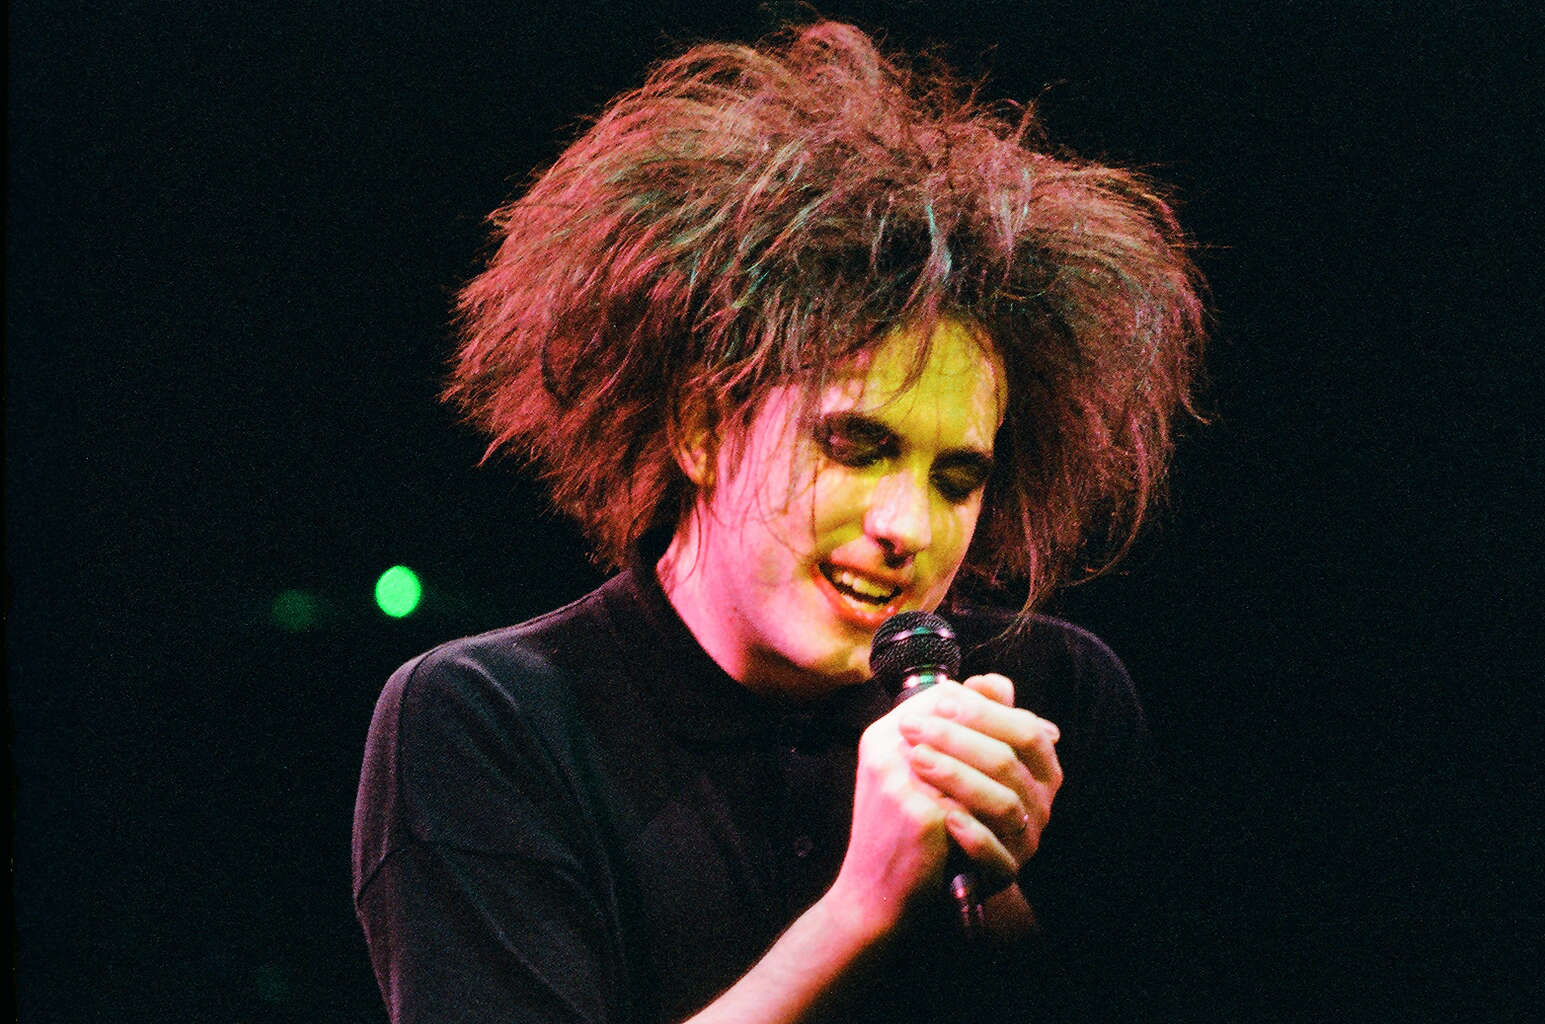 Robert Smith de The Cure actúa en el escenario del Royal Albert Hall, el 25 de abril de 1986, en Londres, Reino Unido. | Foto: Getty Images